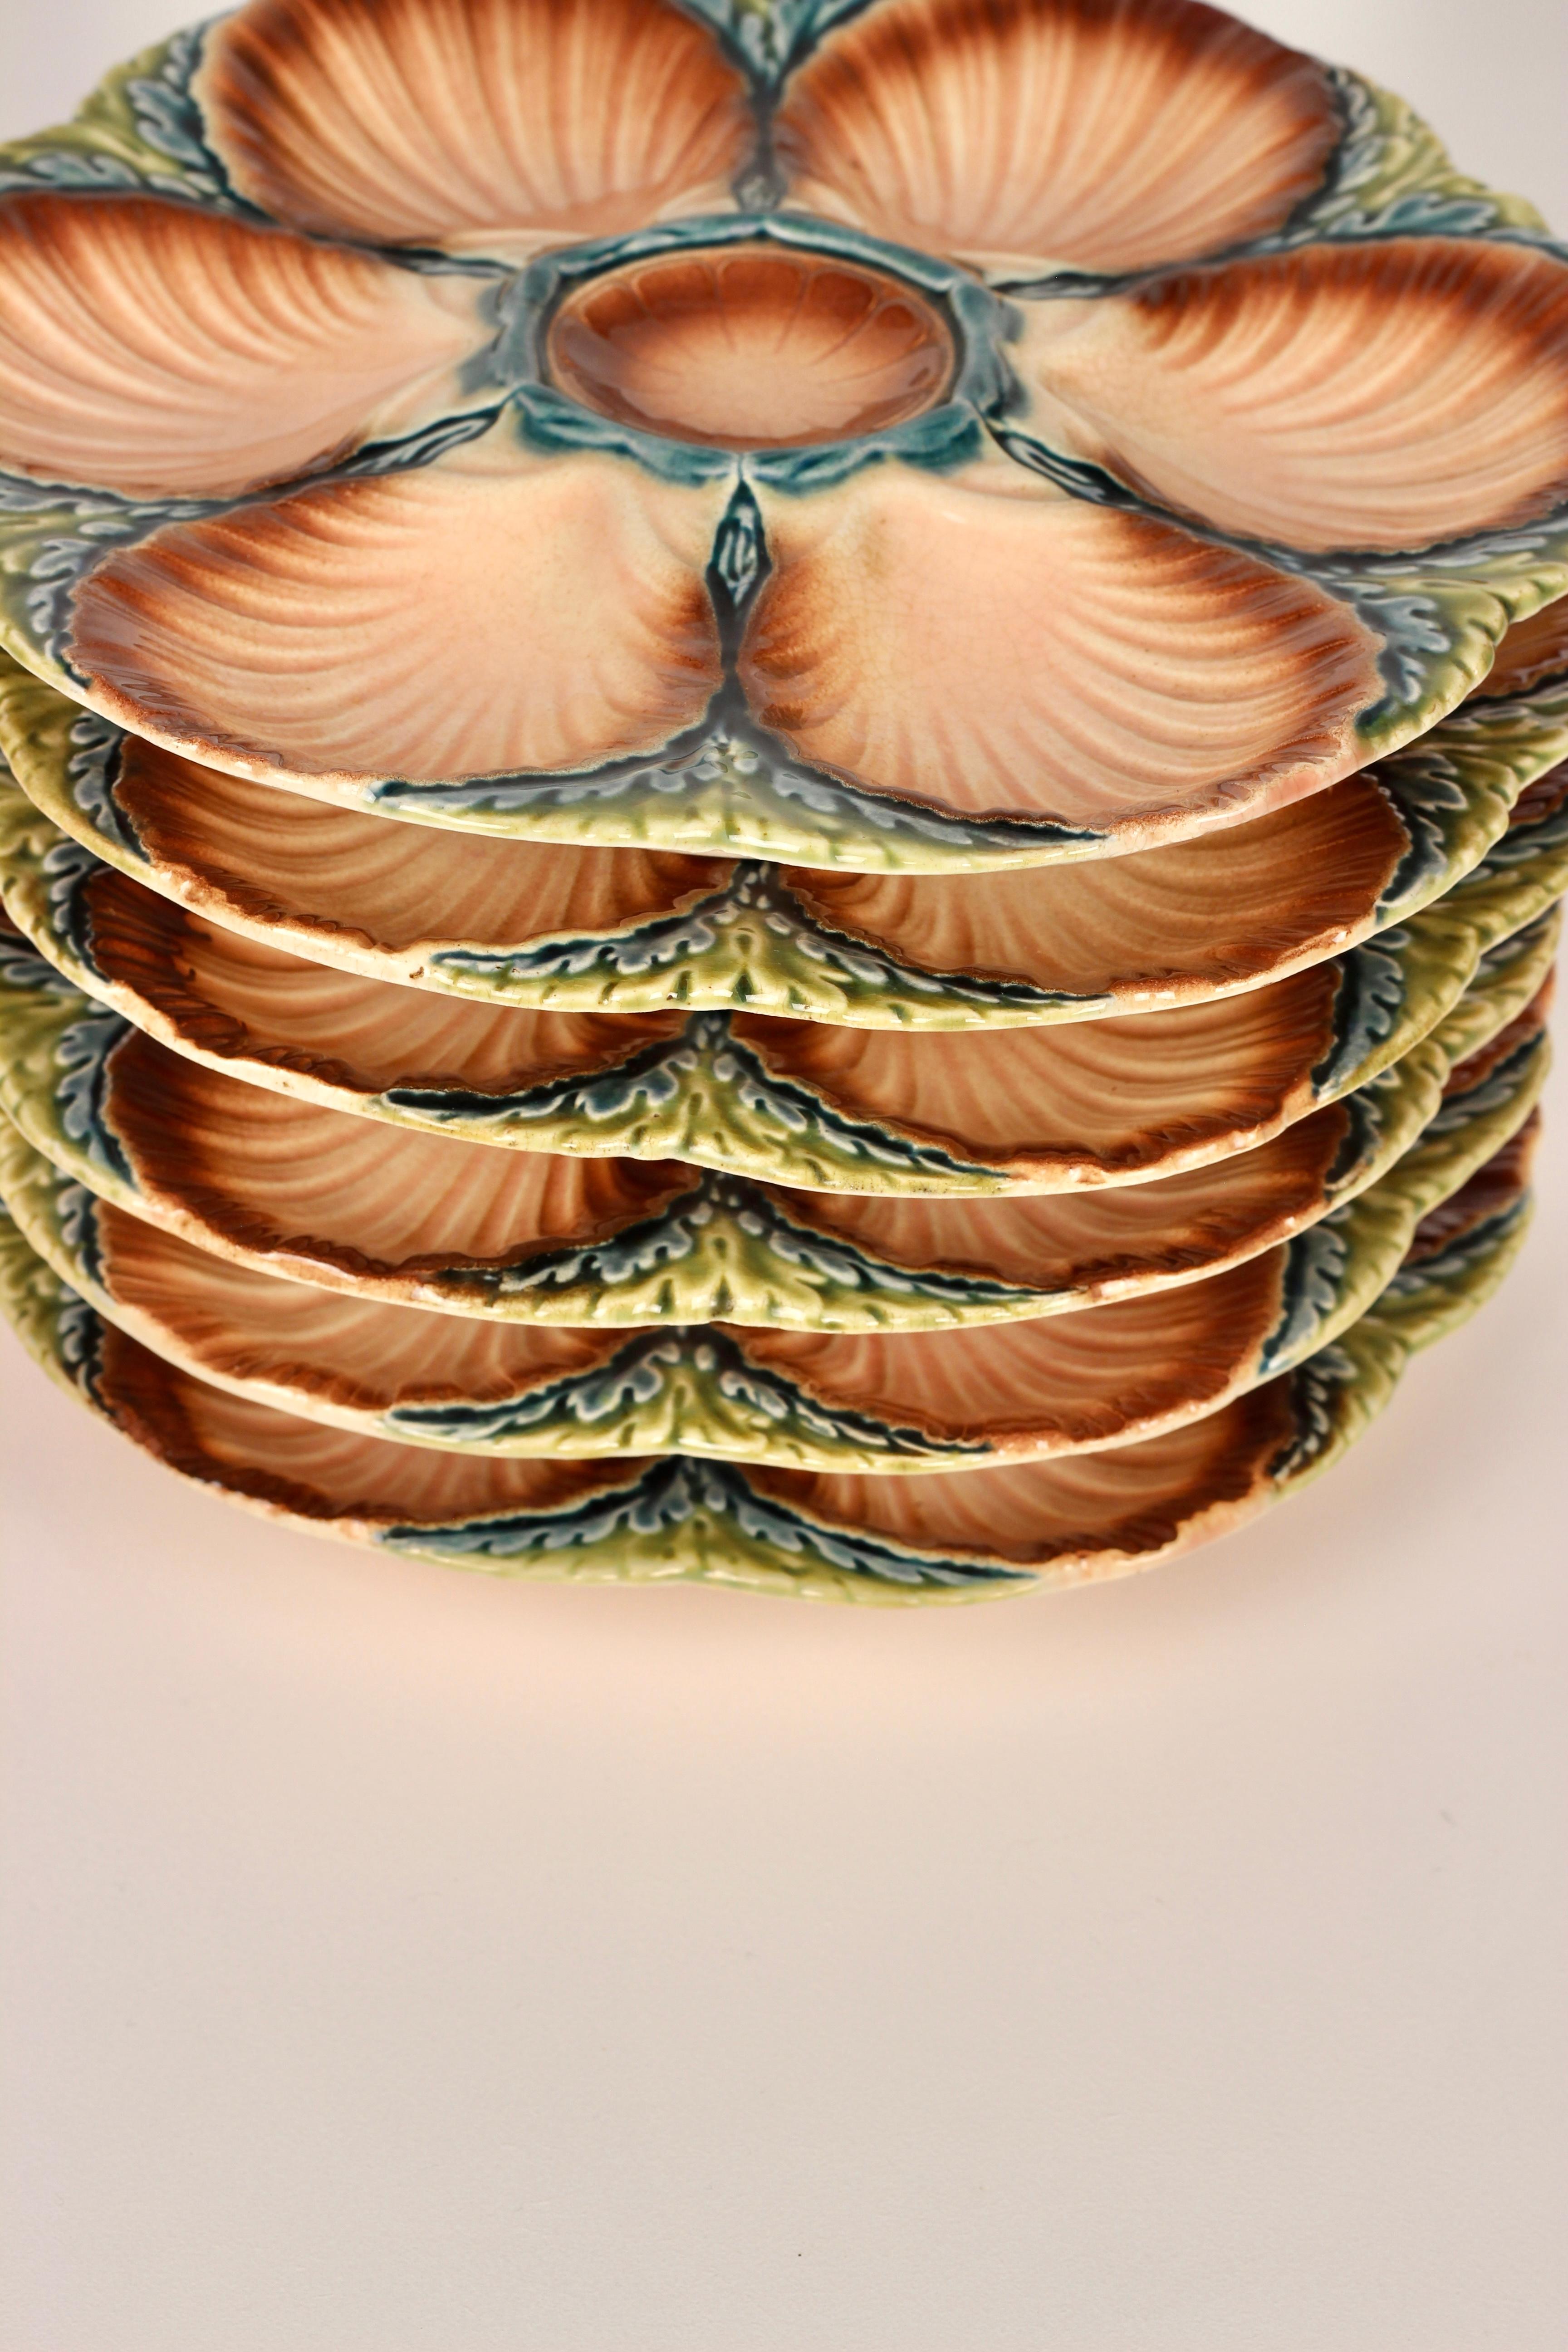 Cette assiette à huîtres en majolique française aux couleurs profondes et lustrées, réalisée par le célèbre fabricant Sarreguemines, vers 1890, constitue une merveilleuse présentation pour les huîtres ou les produits de la mer. Six cavités en forme